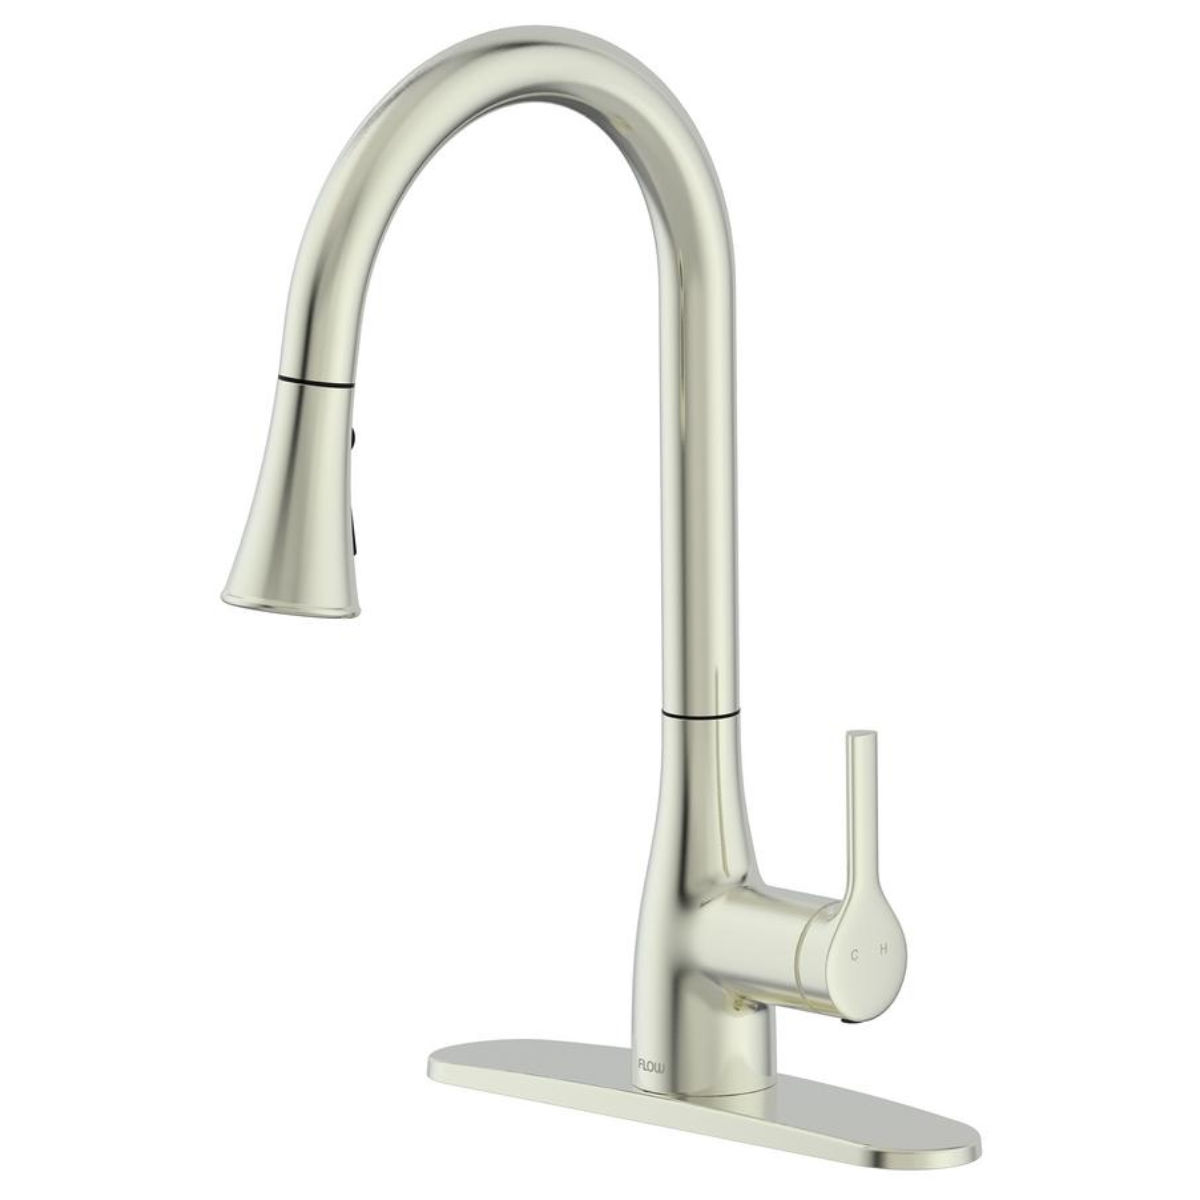 FLOW Classic Series Single-Handle Standard Kitchen Faucet